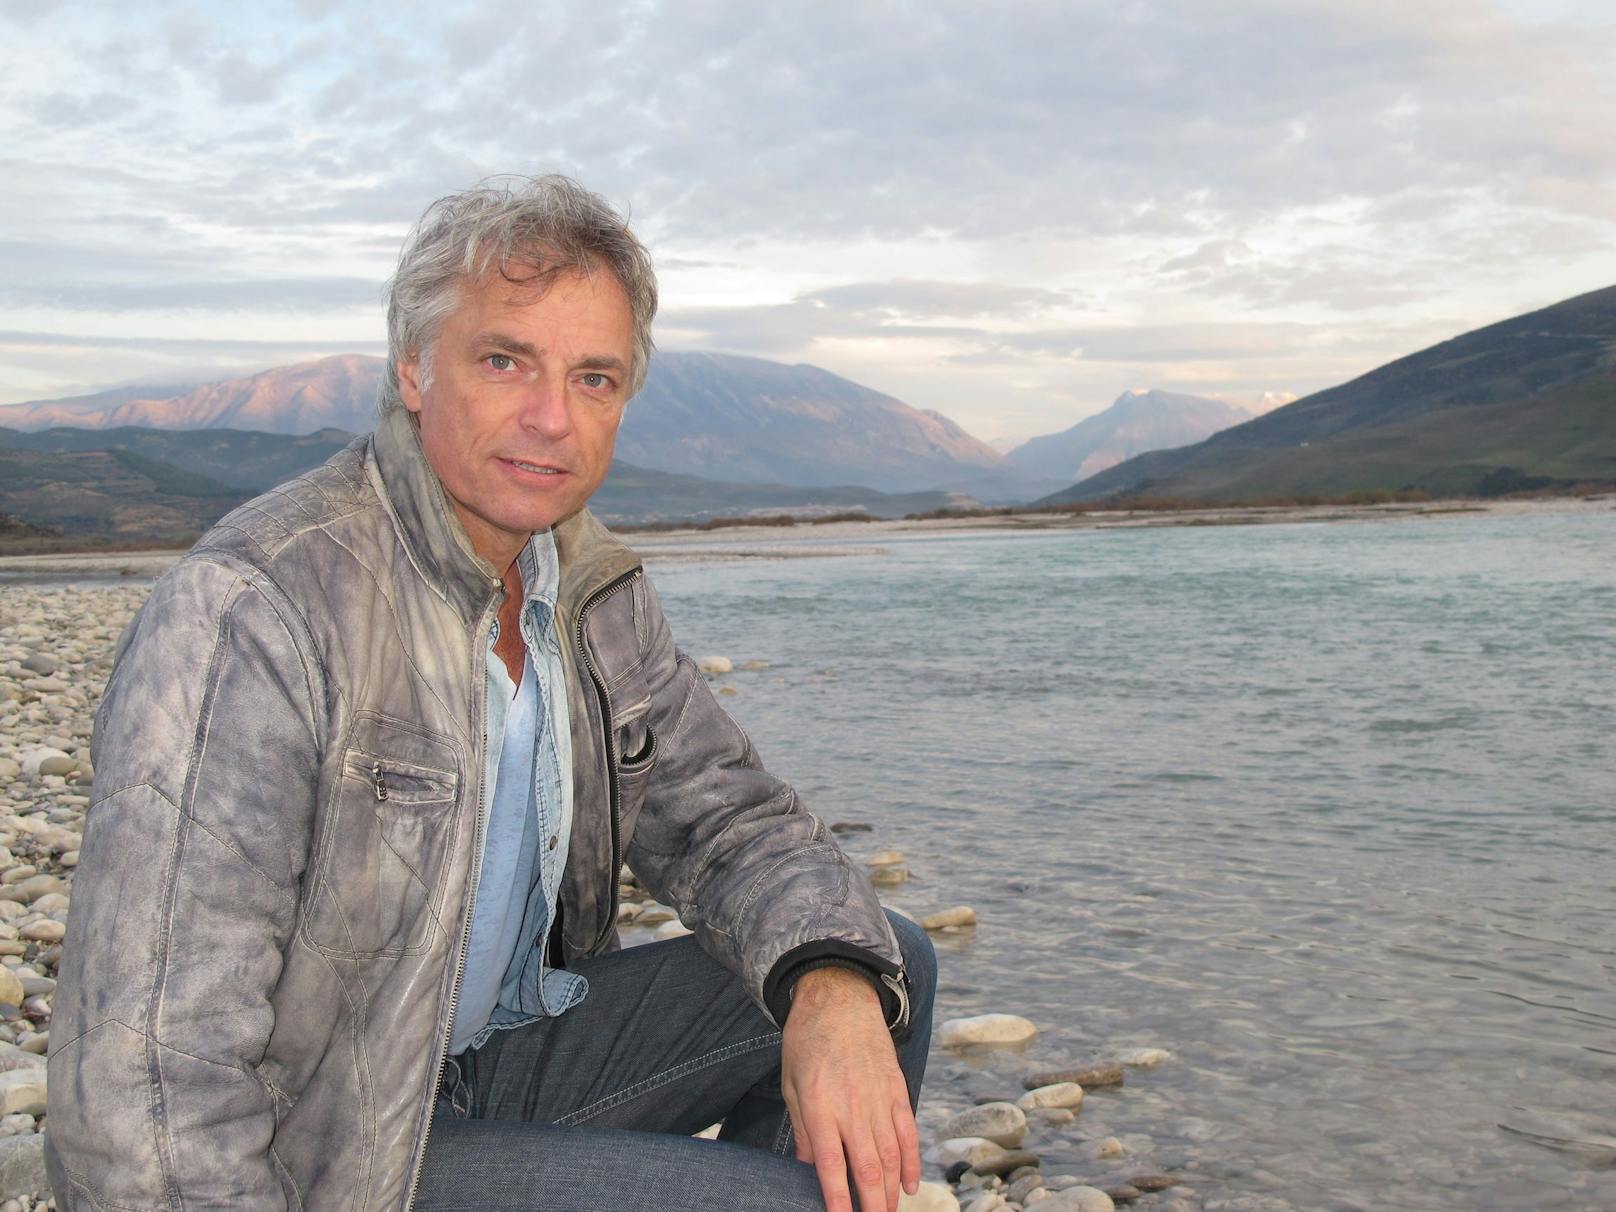 Umweltschützer Ulrich Eichelmann an der Vjosa in Albanien. Jahrelang kämpfte er gegen die Zerstörung des Wildflusses – mit Erfolg. Die albanische Regierung hat den Fluss im Süden des Landes zum Nationalpark erklärt.